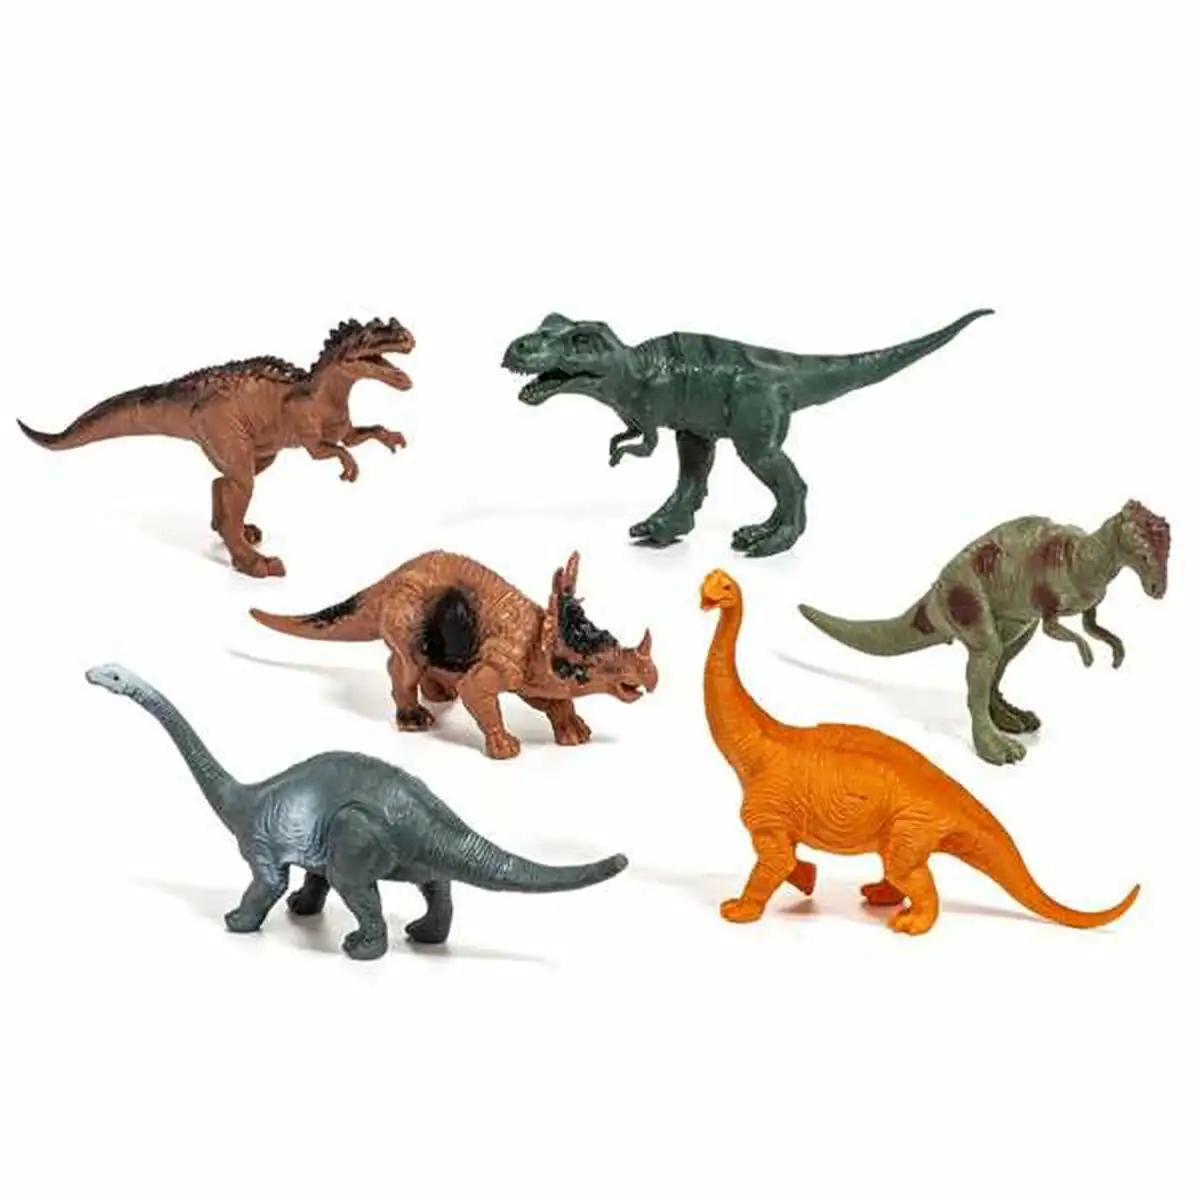 Set dinosaures molto 6 pieces plastique_8189. Bienvenue sur DIAYTAR SENEGAL - Où Choisir Rime avec Qualité. Explorez notre gamme diversifiée et découvrez des articles conçus pour répondre à vos attentes élevées.